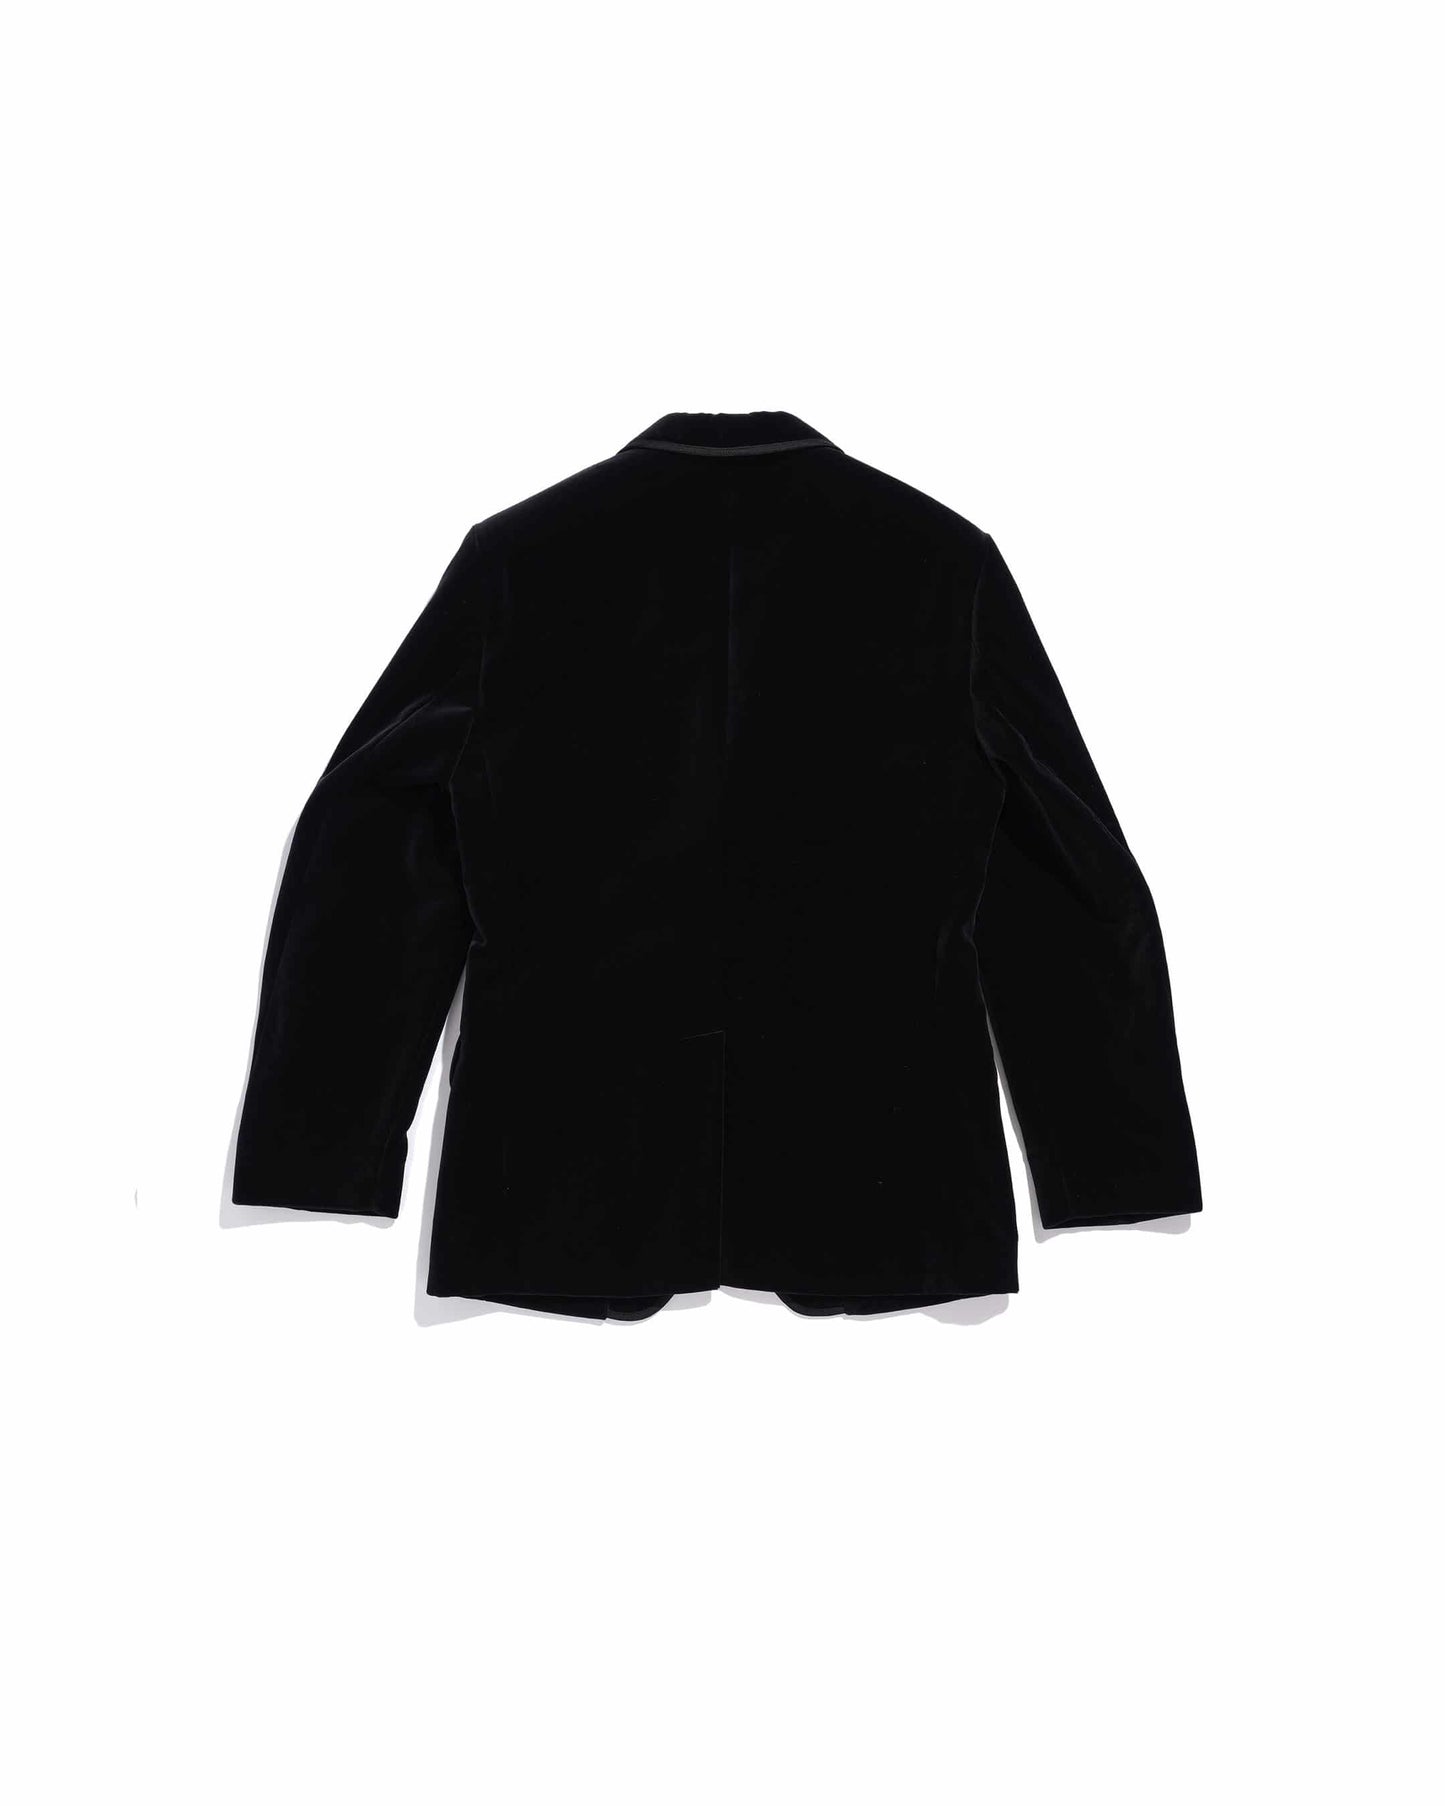 Men's black velvet gardian jacket